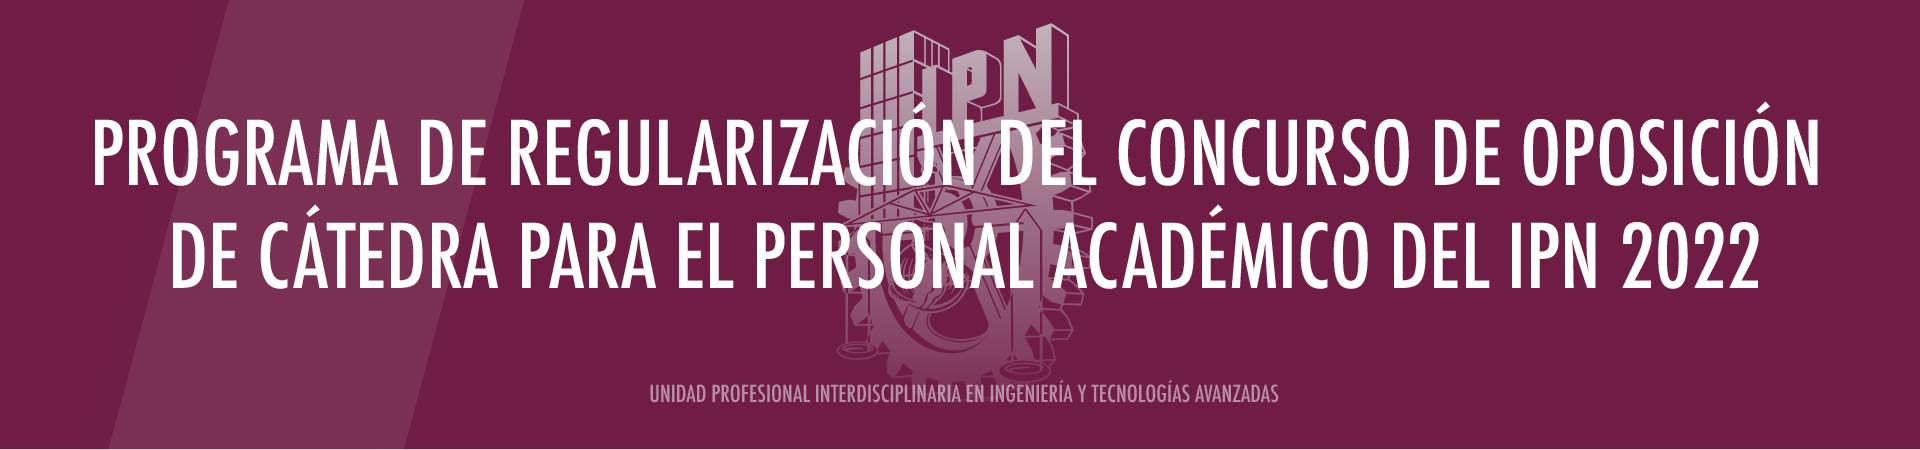 Programa de Regularización del Concurso de Oposición de Cátedra para el Personal Académico del IPN 2022